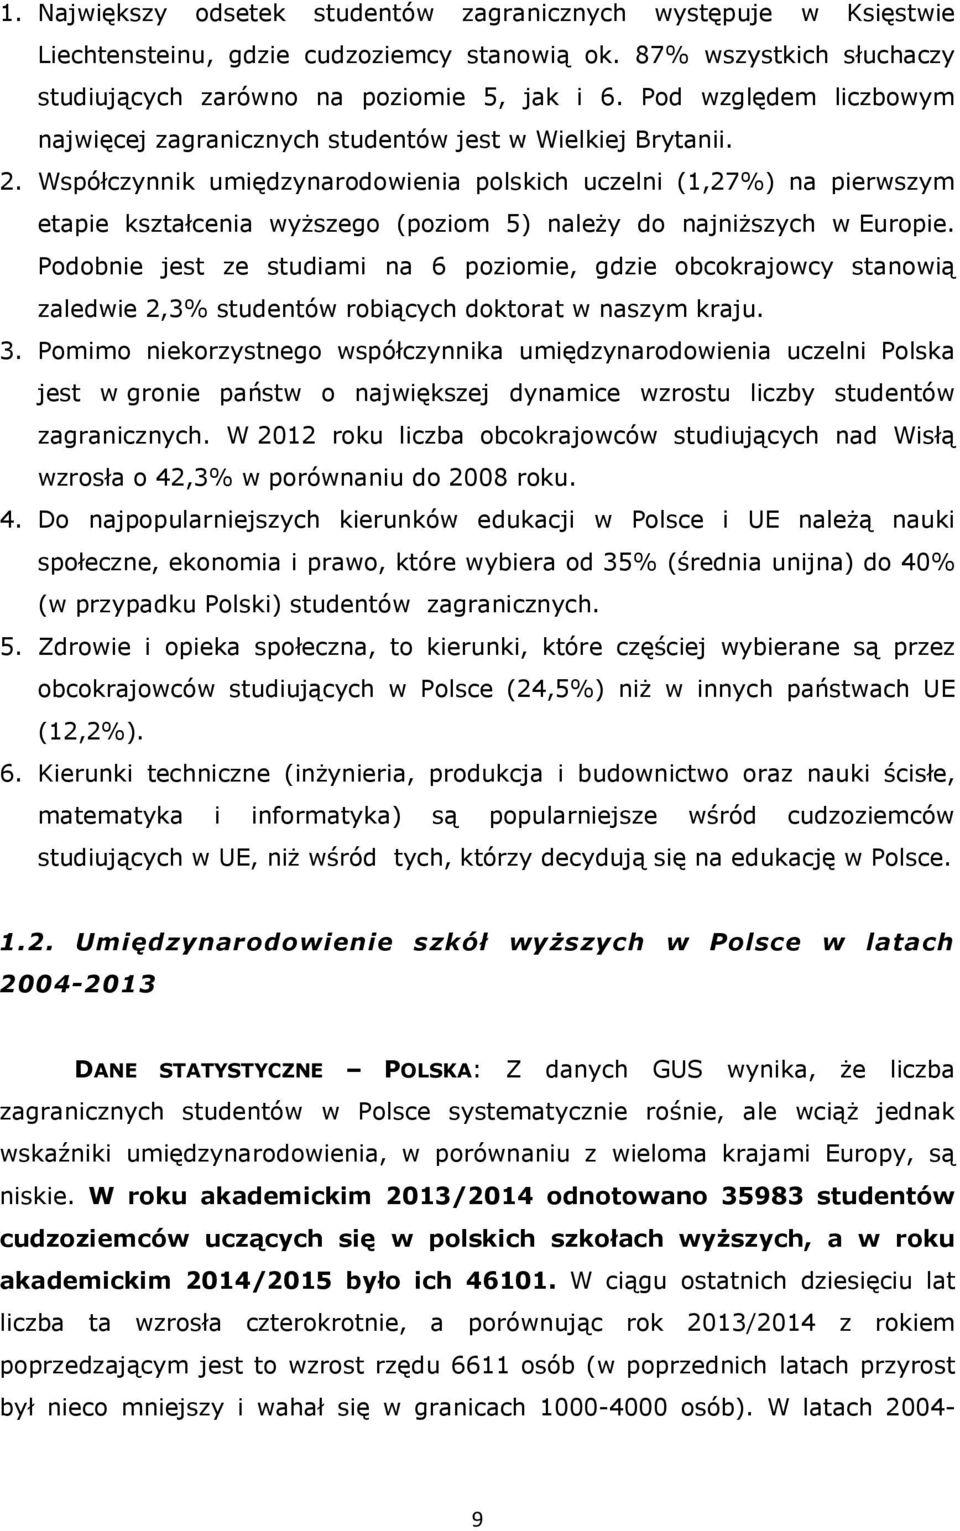 Współczynnik umiędzynarodowienia polskich uczelni (1,27%) na pierwszym etapie kształcenia wyższego (poziom 5) należy do najniższych w Europie.